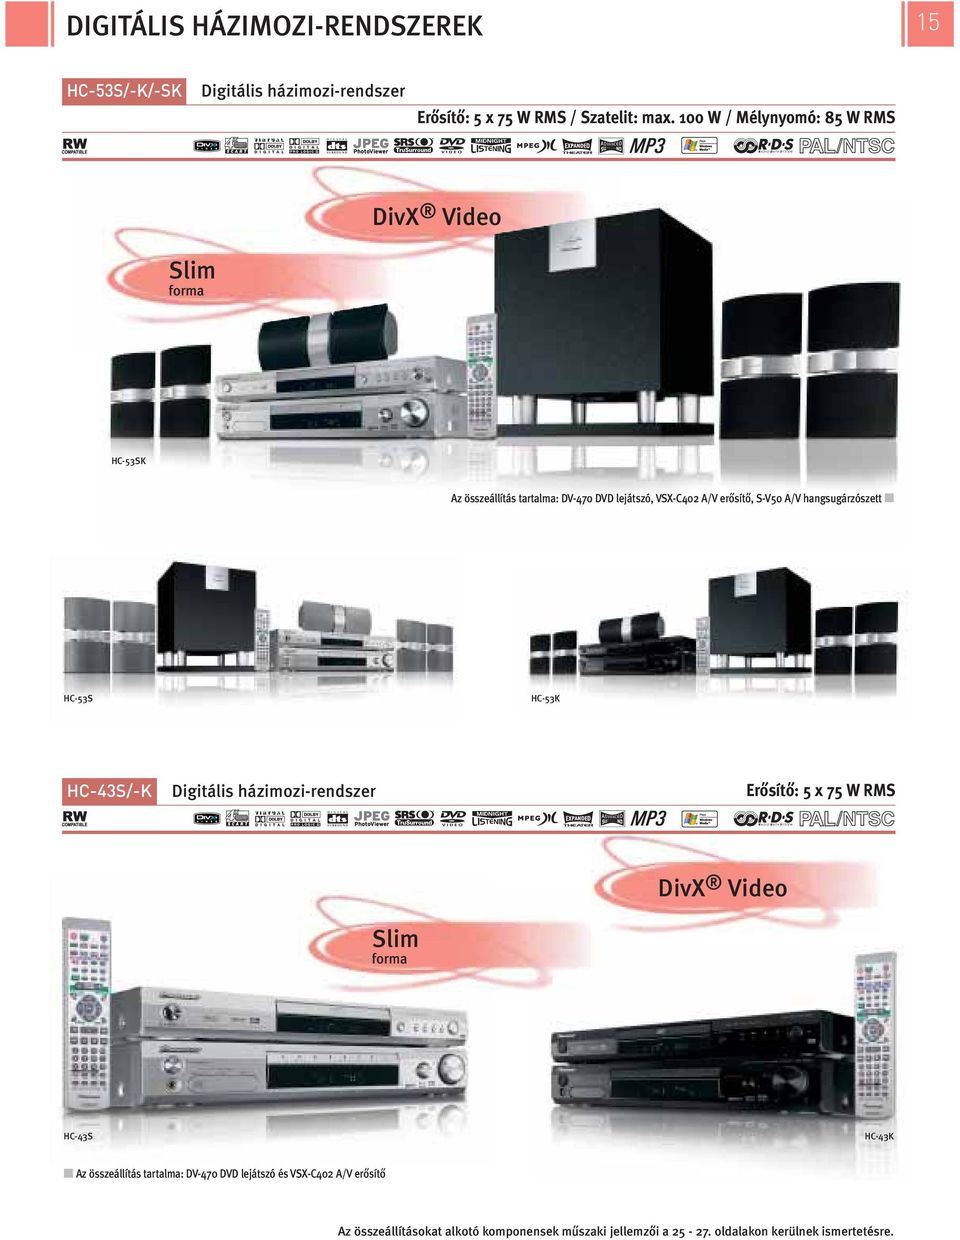 S-V50 A/V hangsugárzószett HC-53S HC-53K HC-43S/-K Digitális házimozi-rendszer Erősítő: 5 x 75 W RMS SkP O yb/a DivX Video Slim forma HC-43S